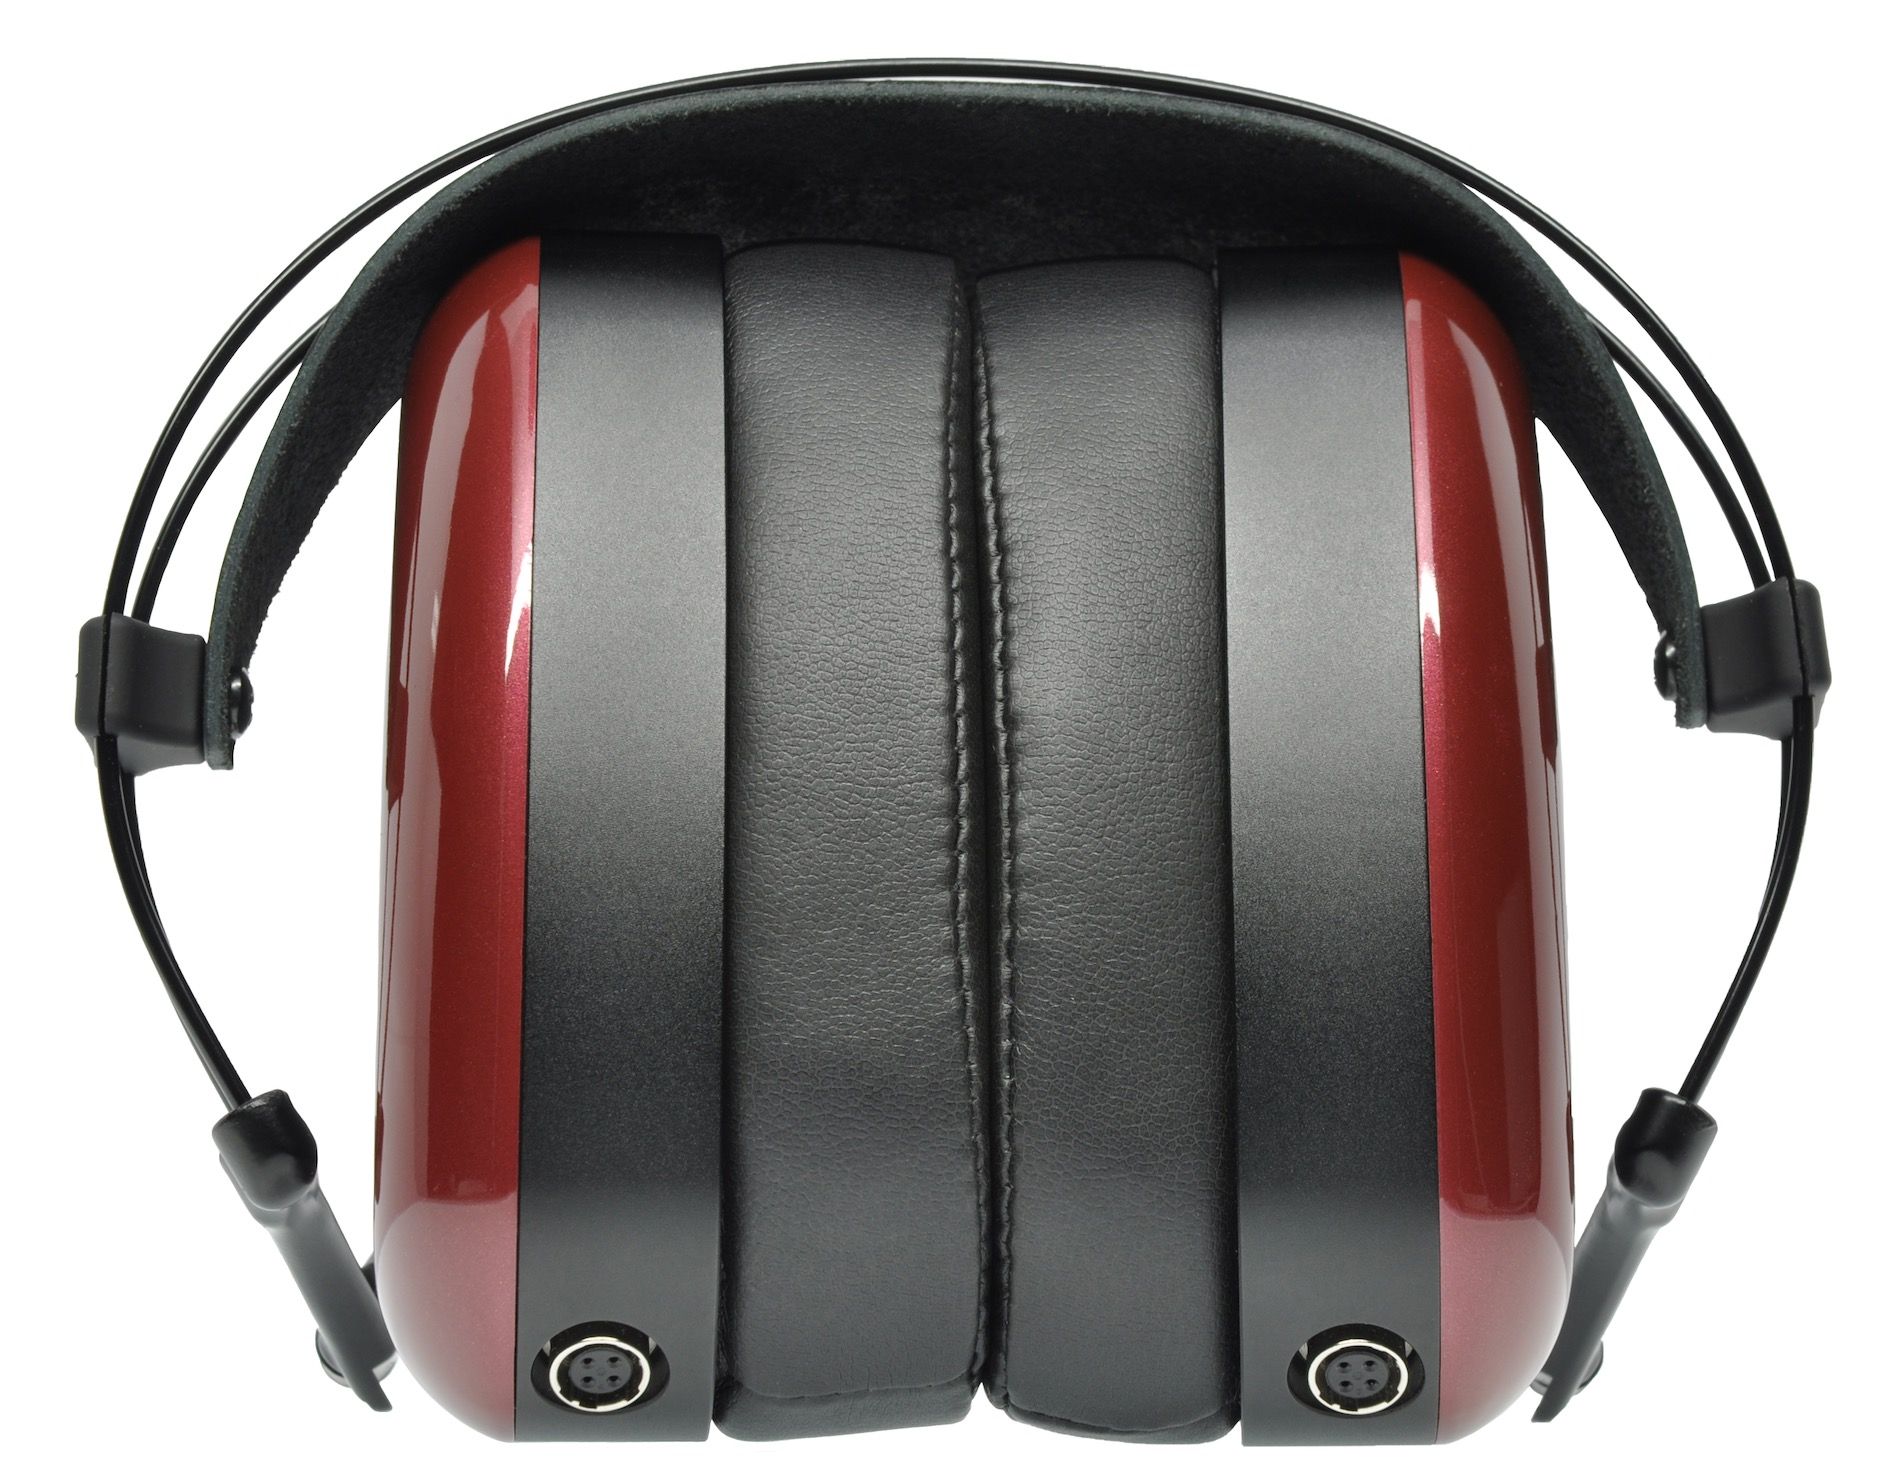 Aeon2 headphones from Dan Clark